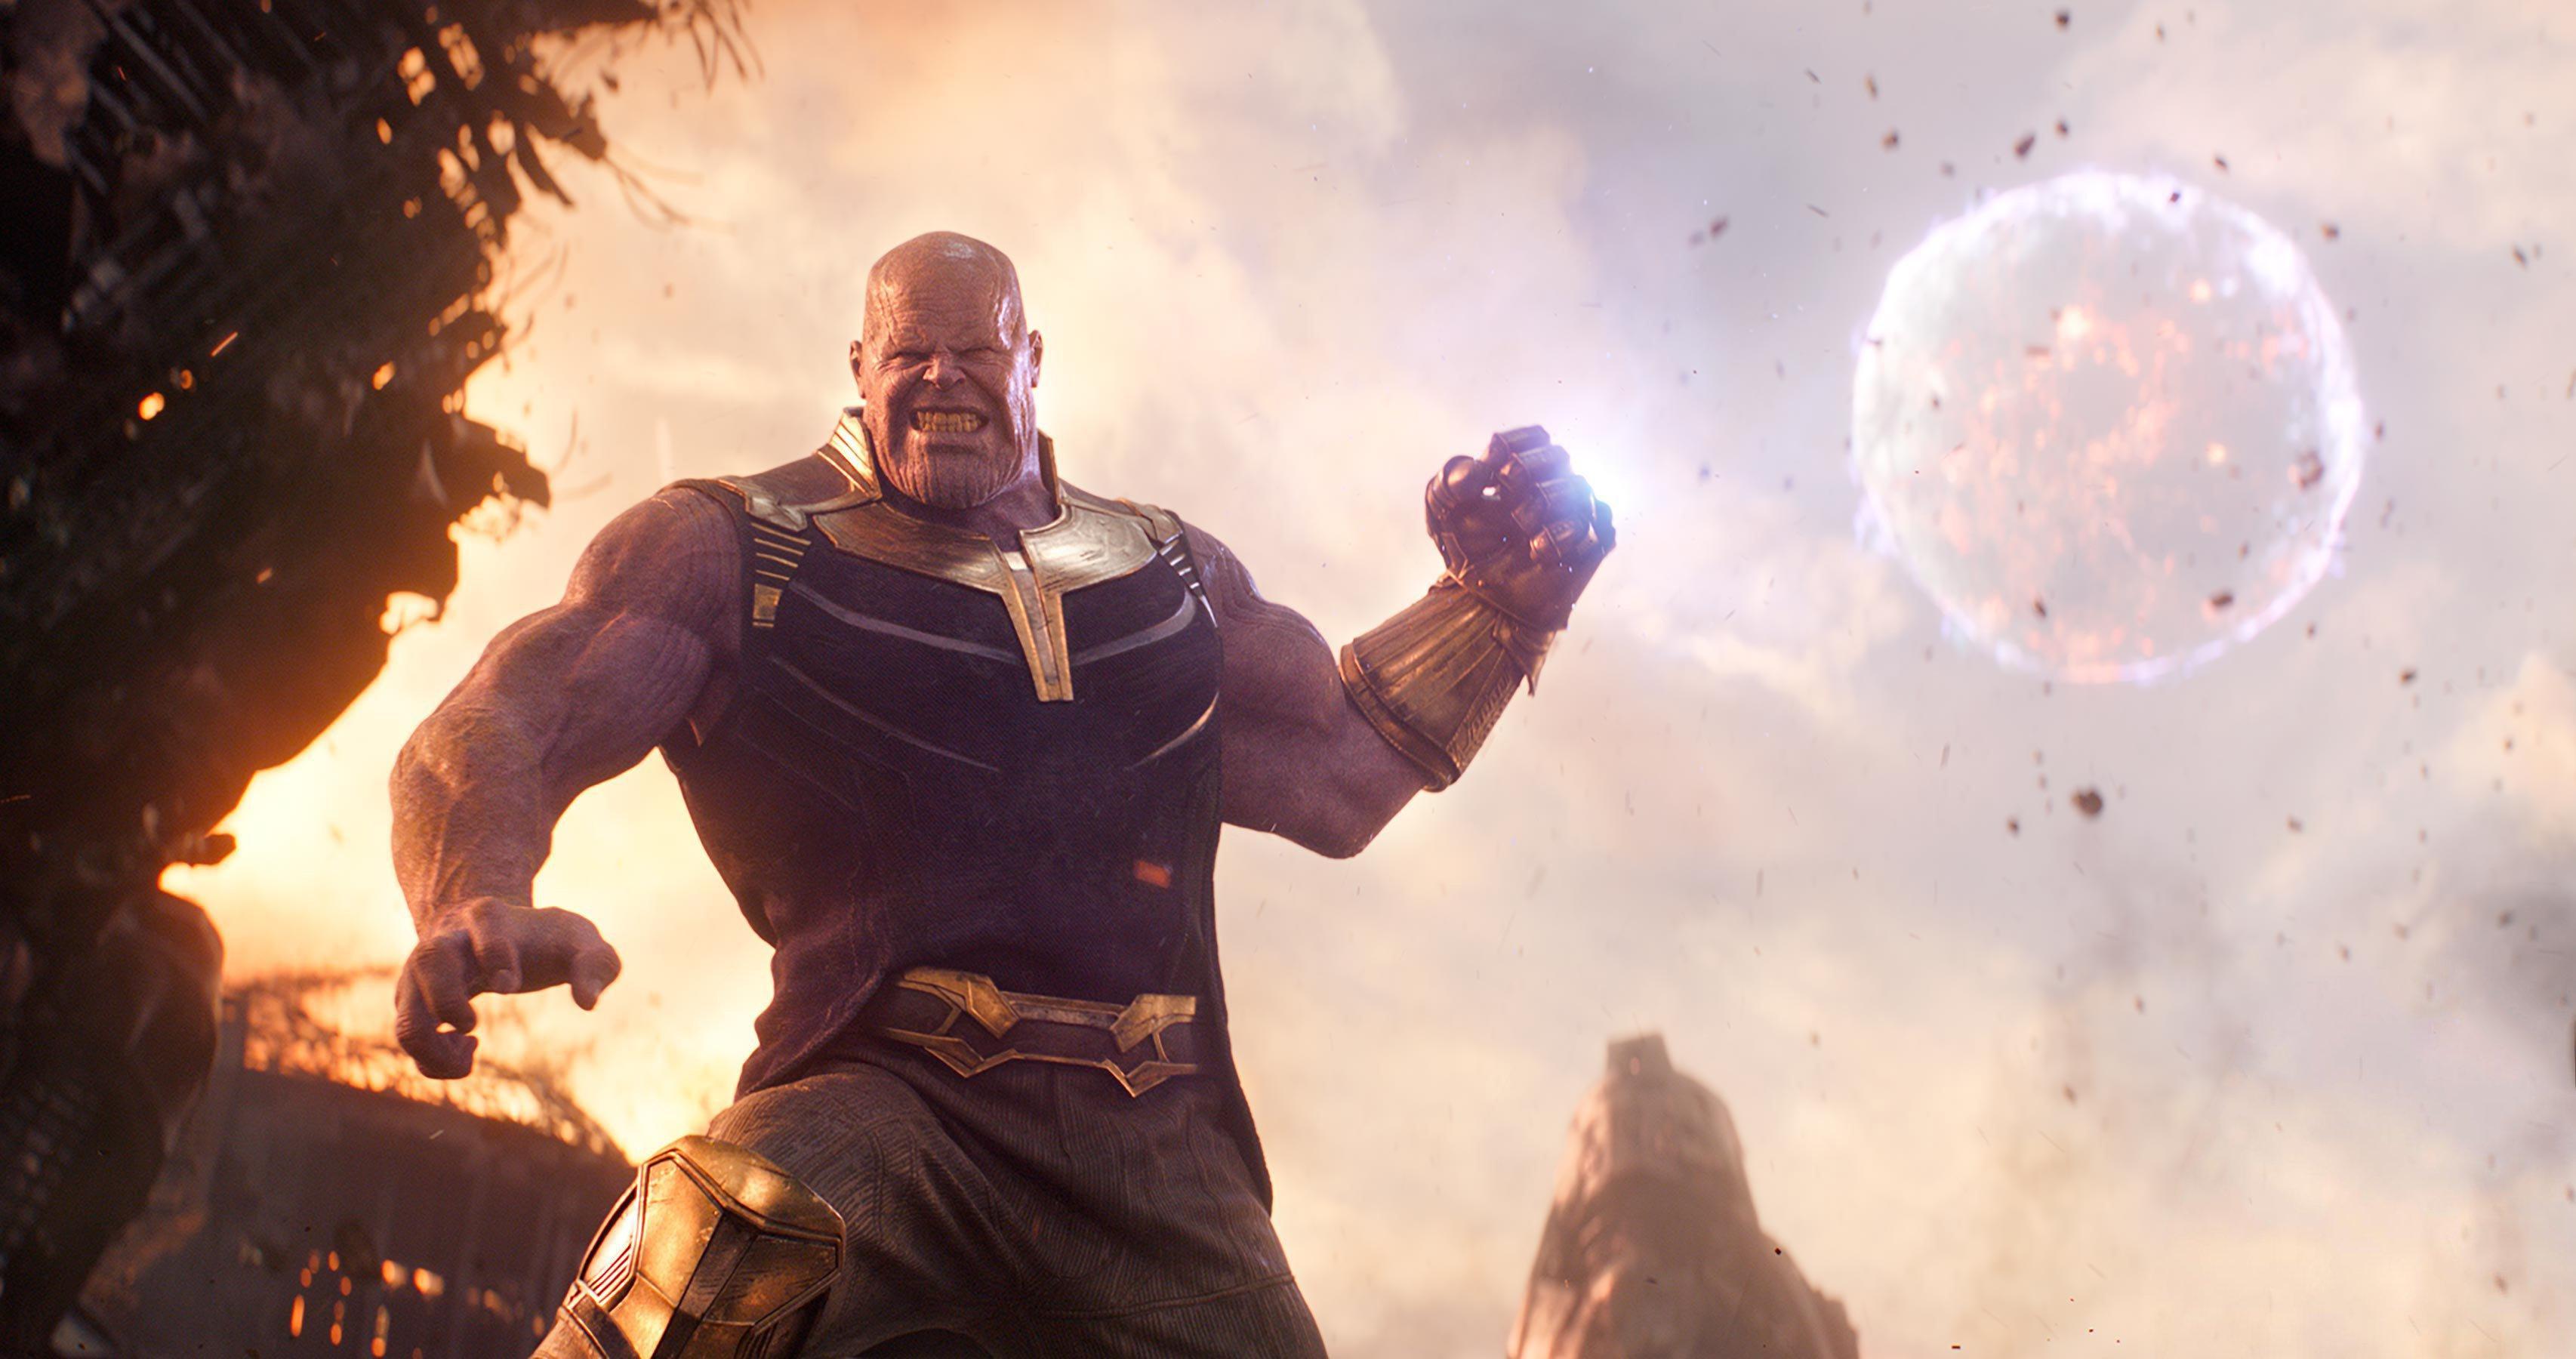 Download Avengers Infinity Thanos 4K Widescreen Desktop Wallpaper 922 3412x1800 px High Resolution Wallpaper